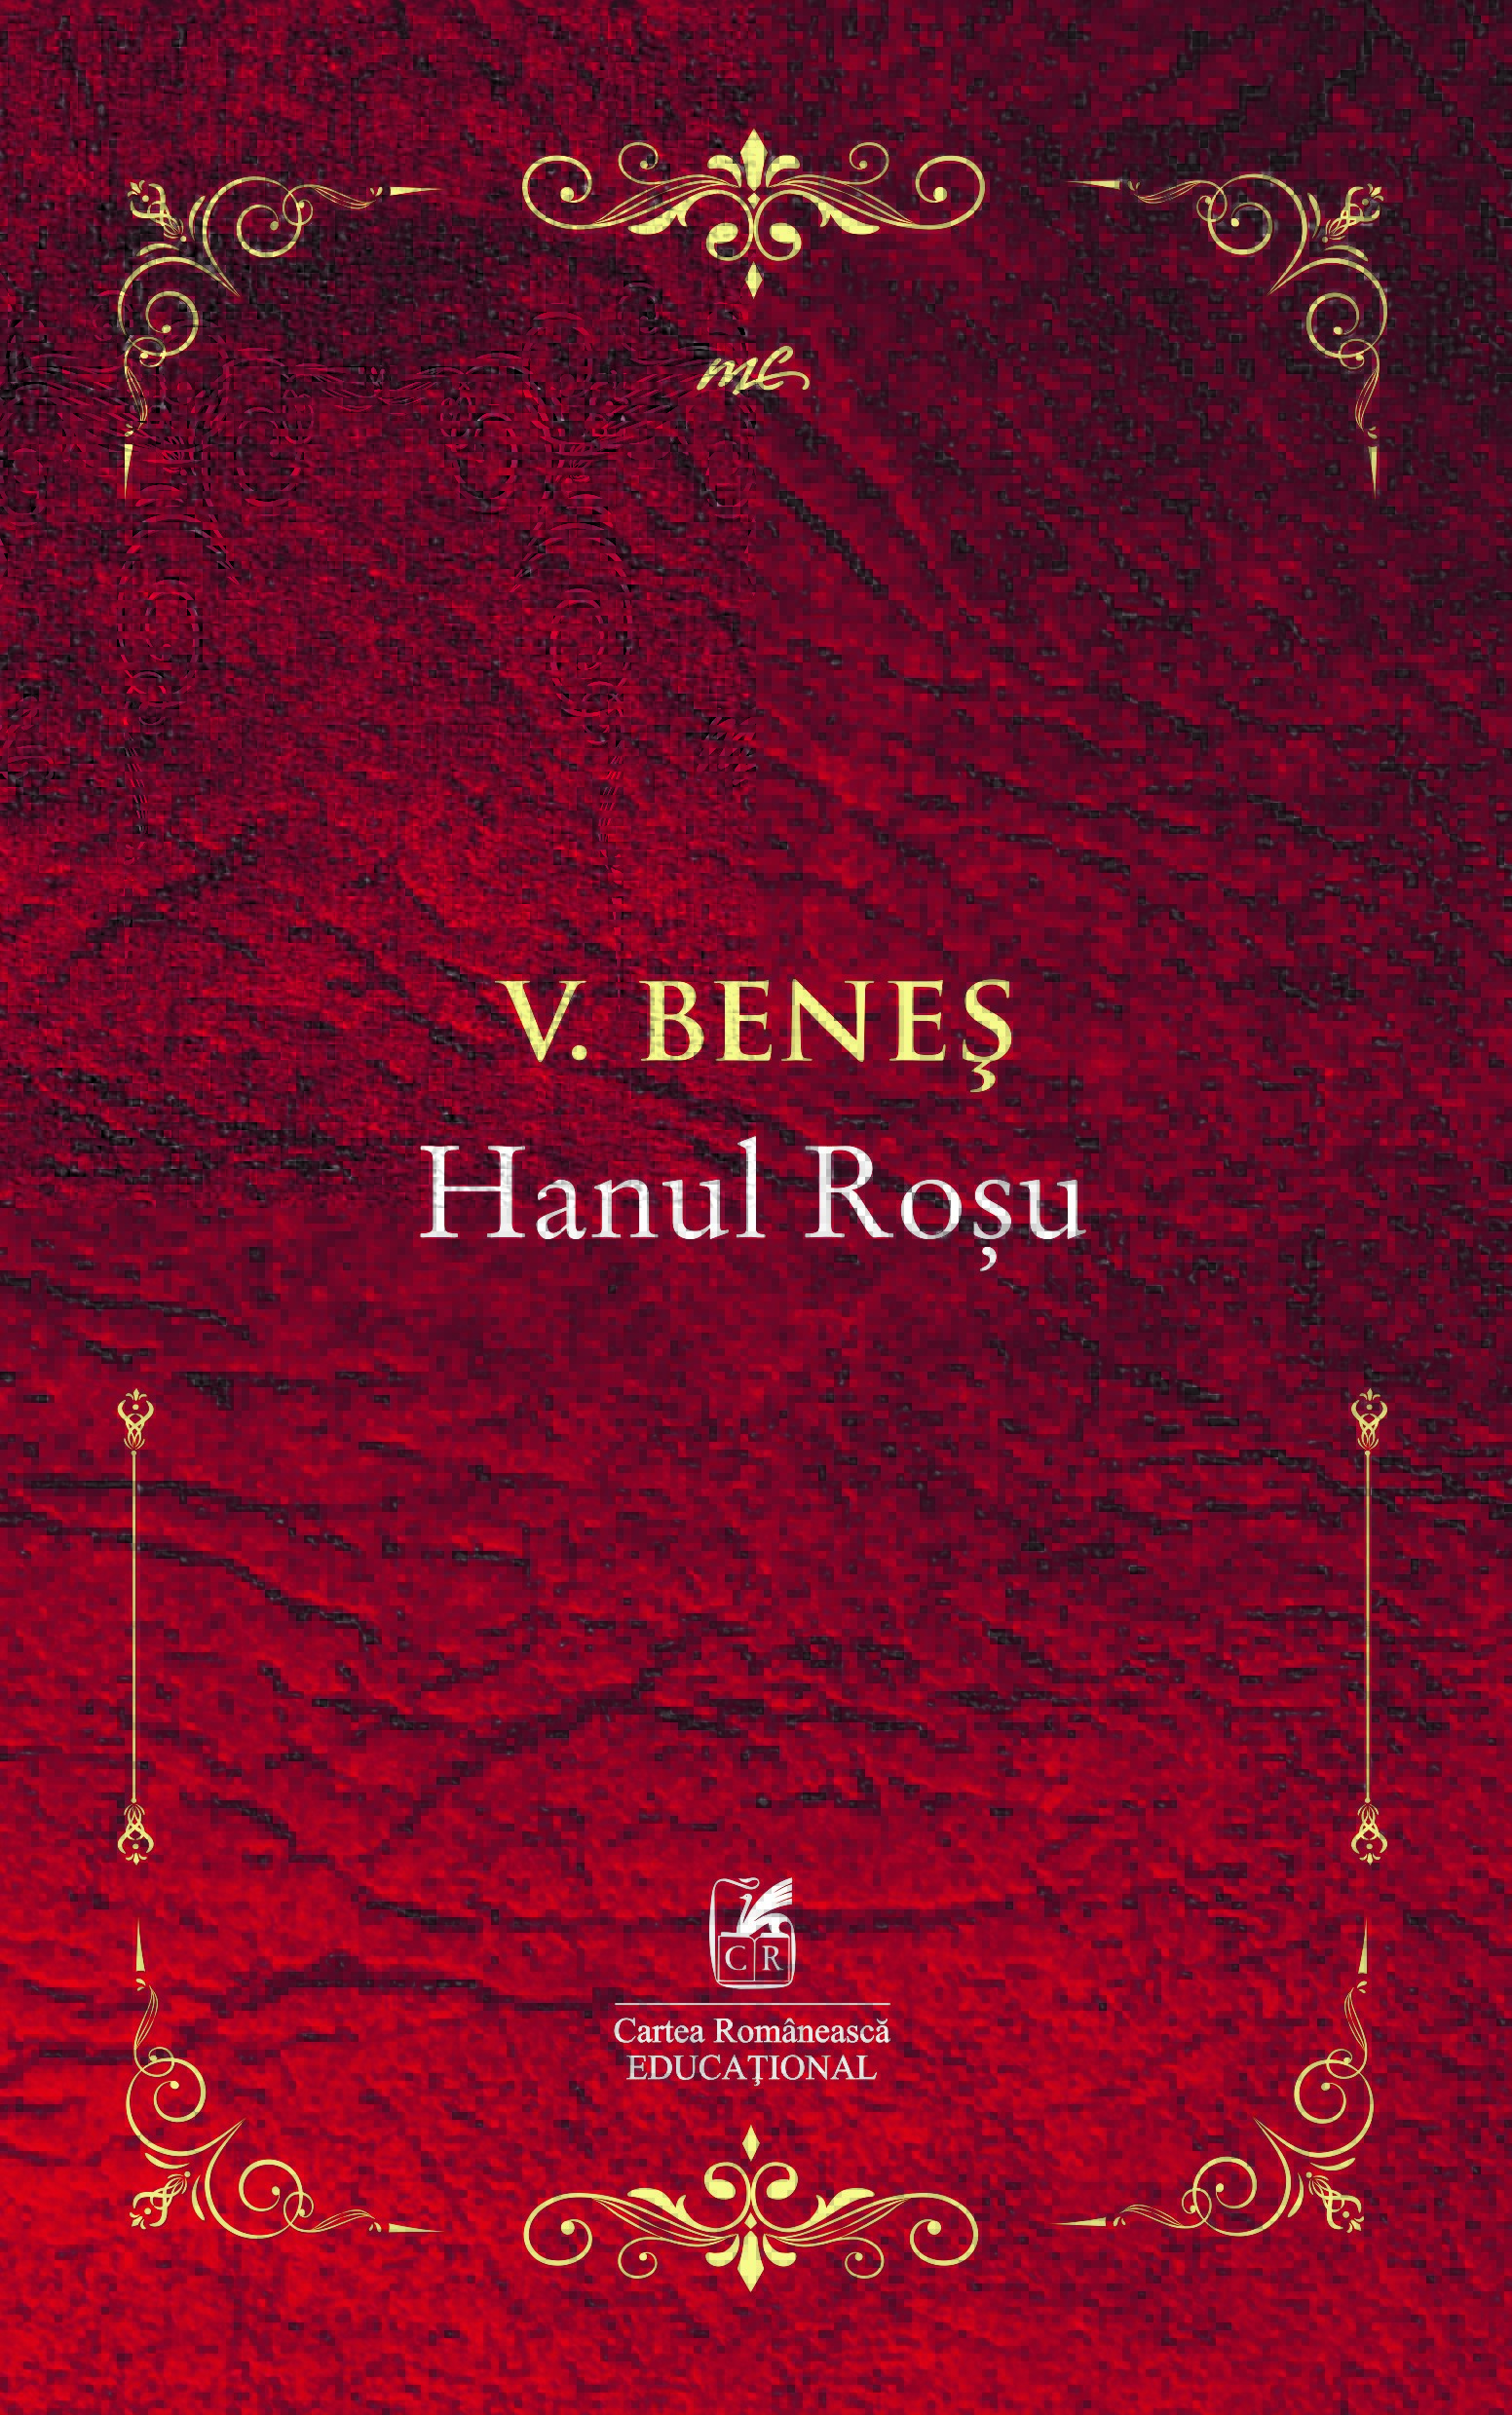 Coperta cărții: Hanul Rosu - lonnieyoungblood.com